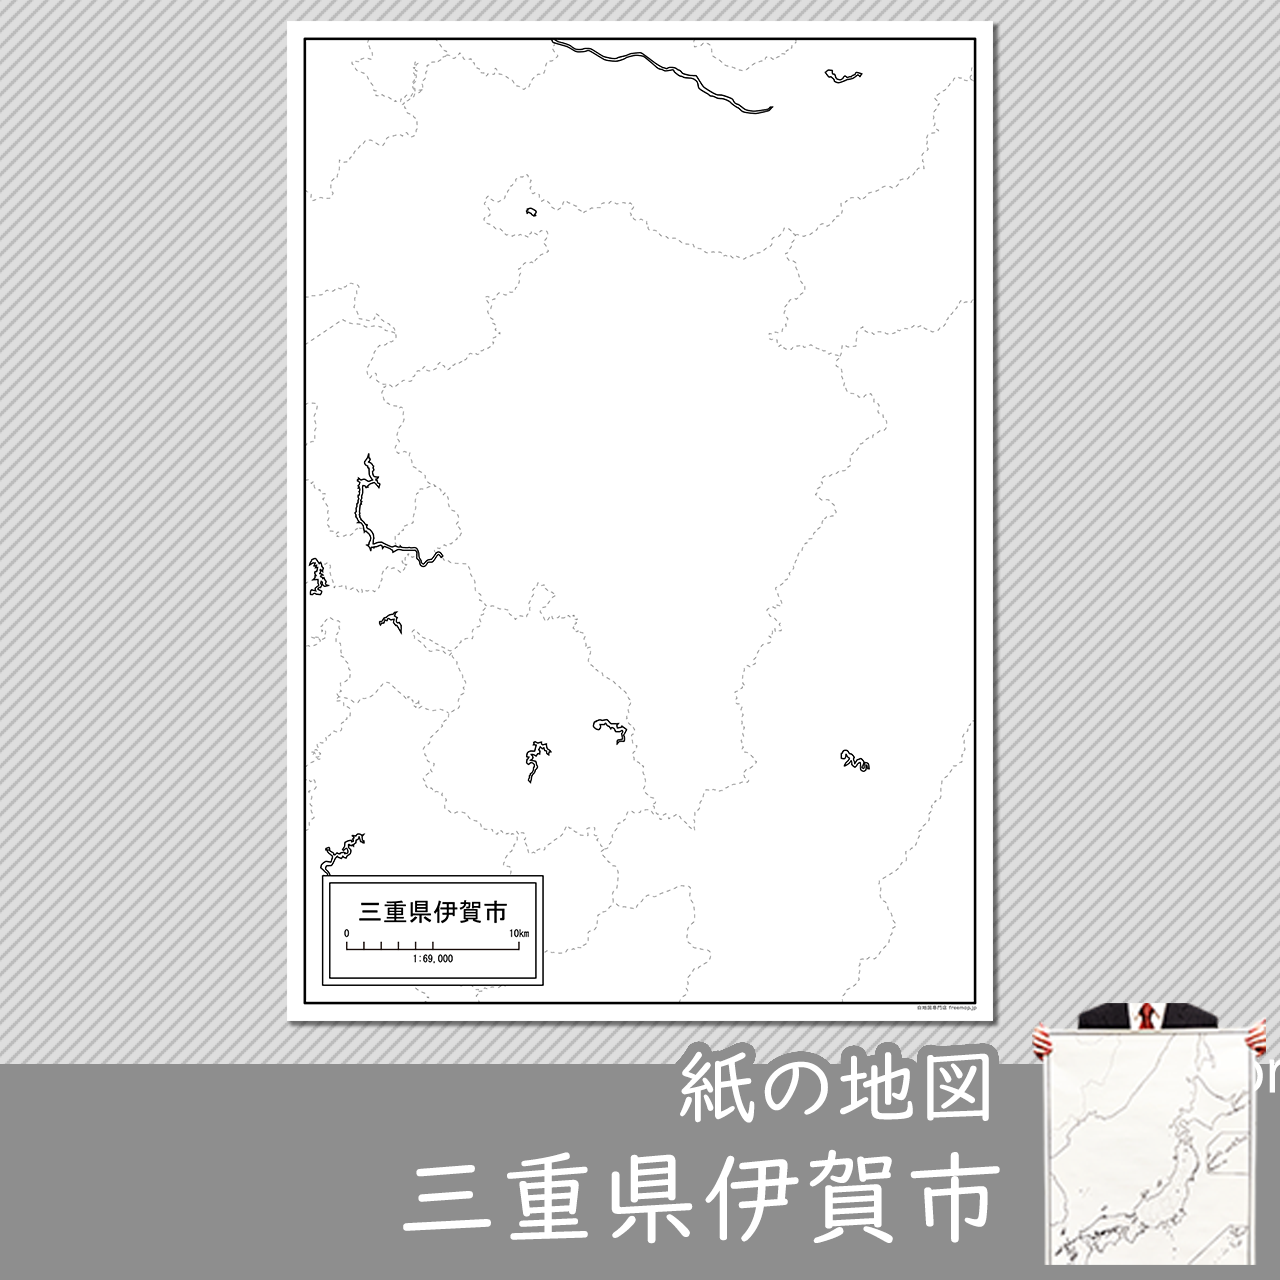 伊賀市の紙の白地図のサムネイル